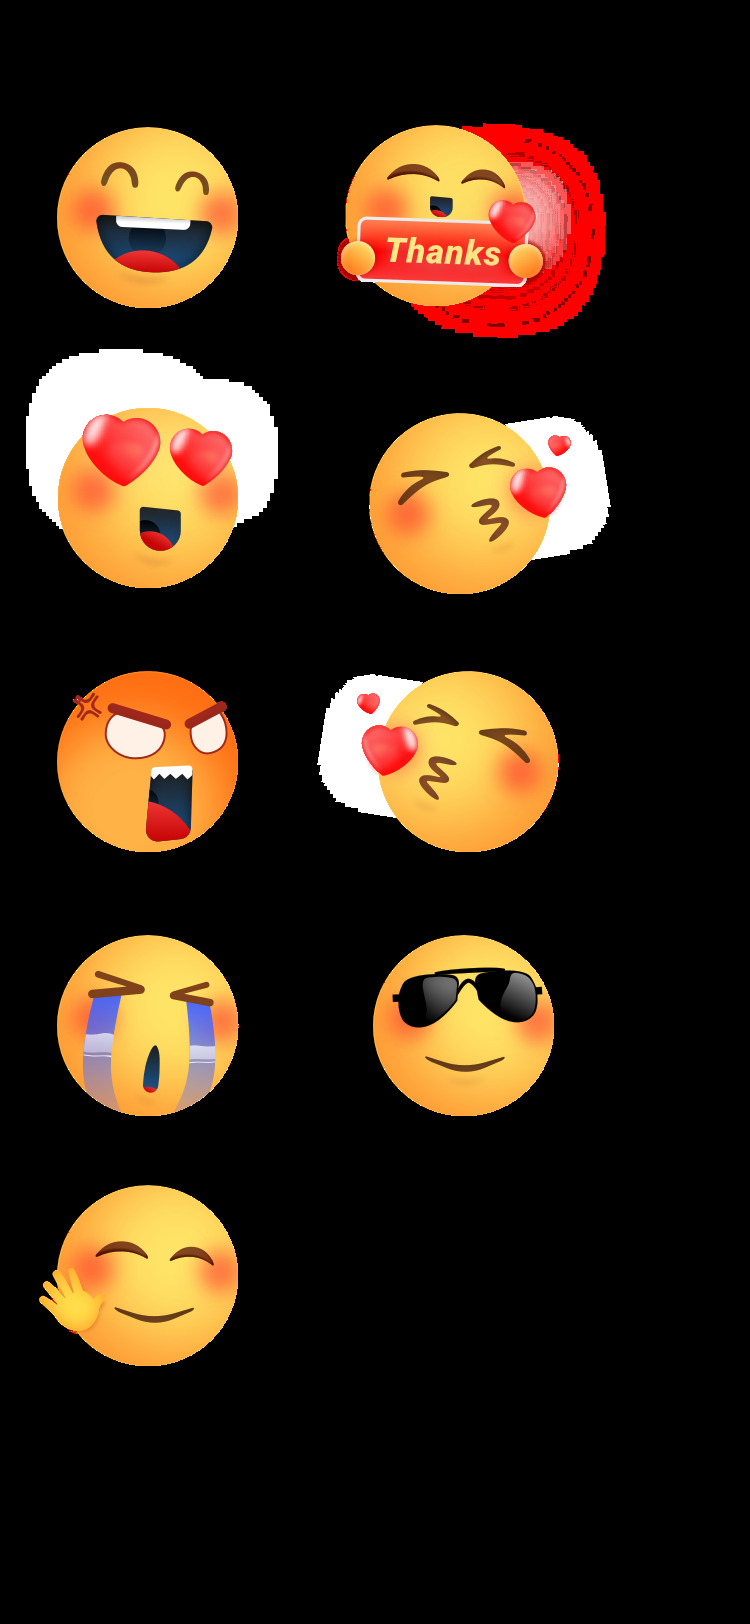 emoji 表情 包 表情包 搞笑 有趣 可爱 幽默 标志图标 其他图标